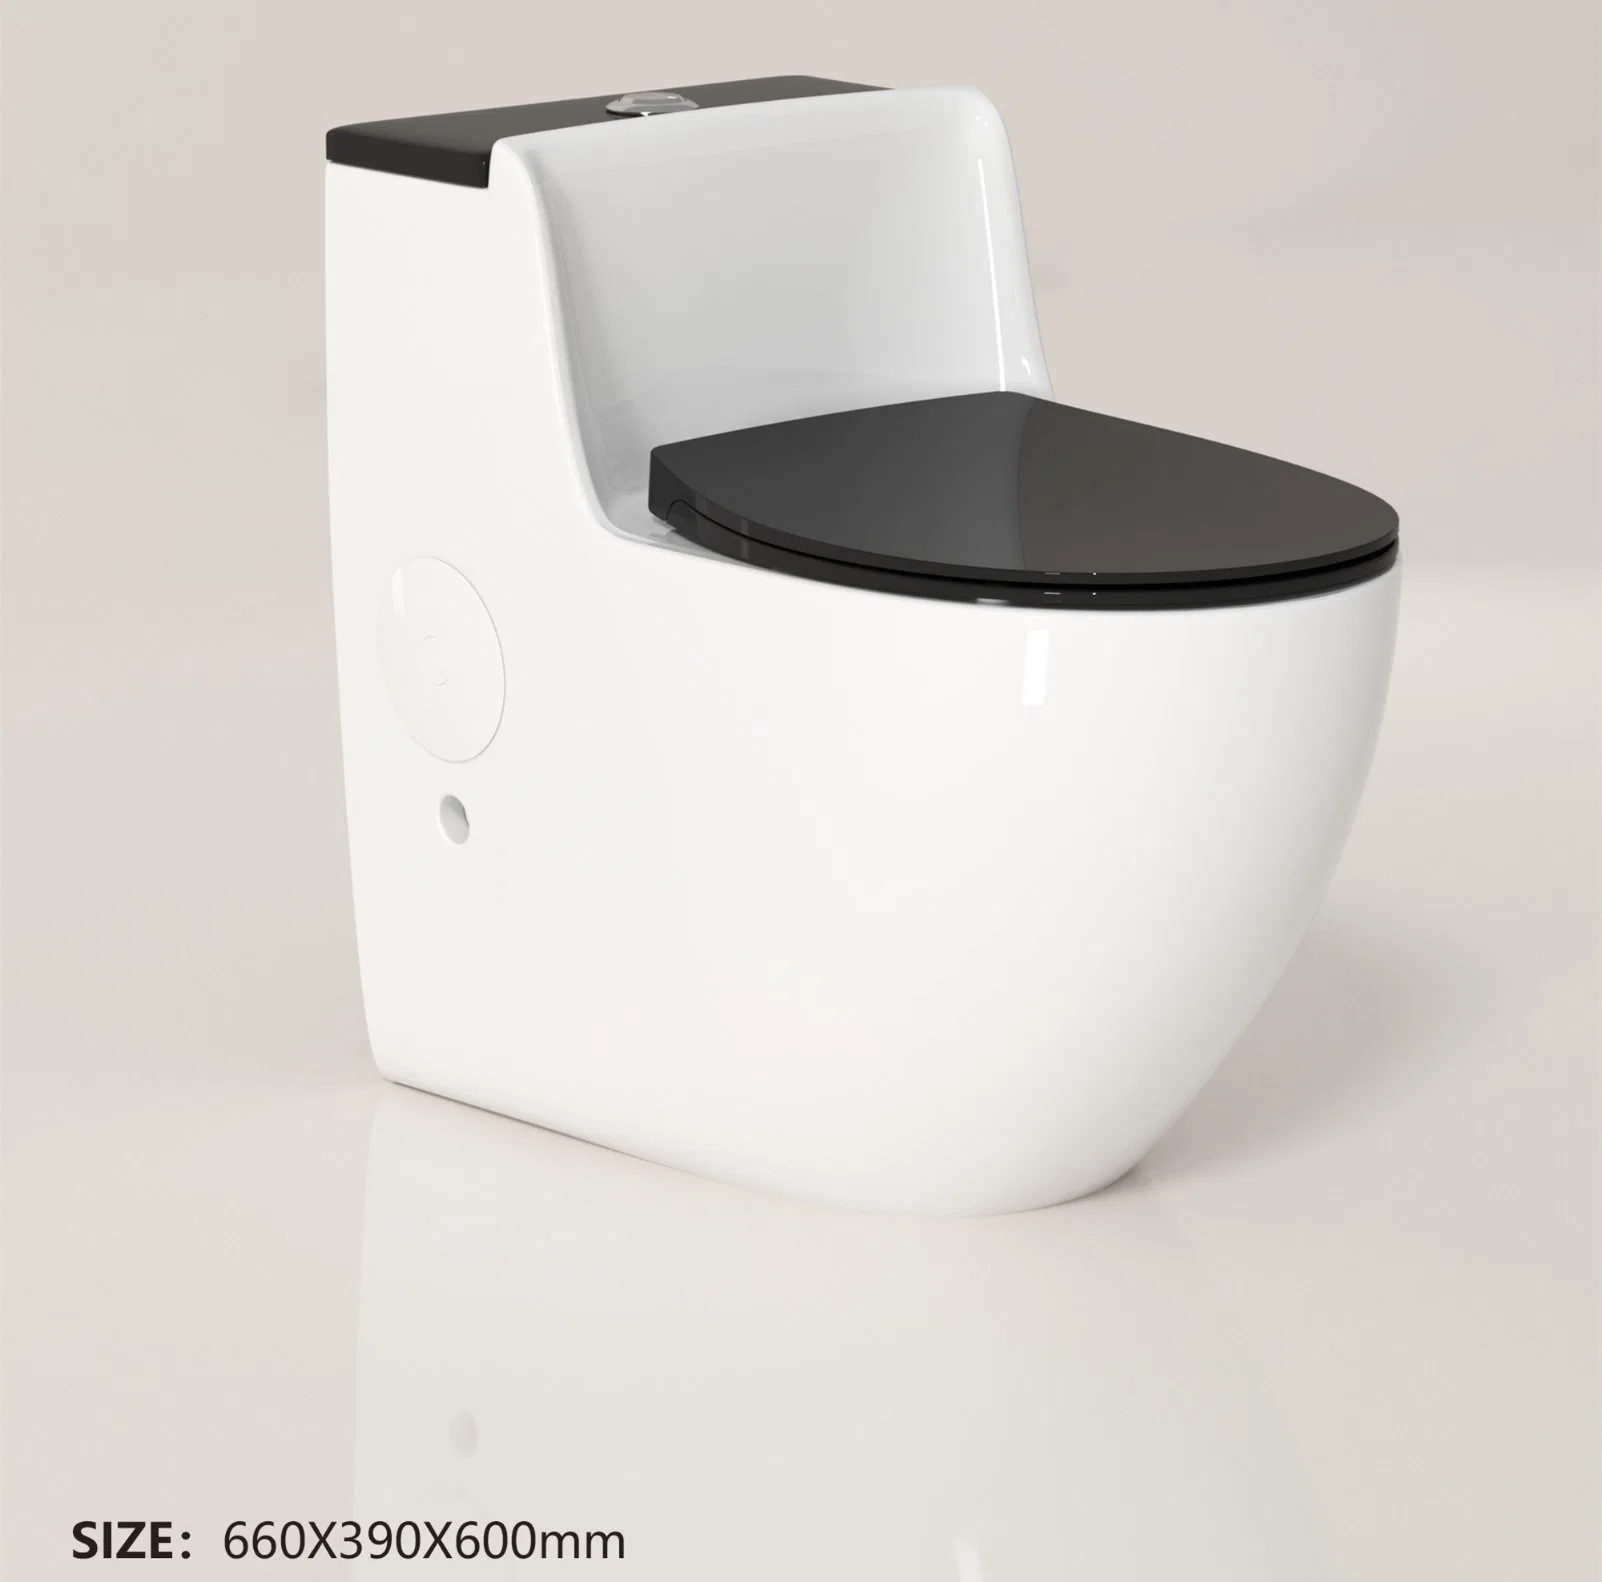 Aparatos sanitarios Wc cuarto de baño blanco cerámica de estilo europeo wc independiente